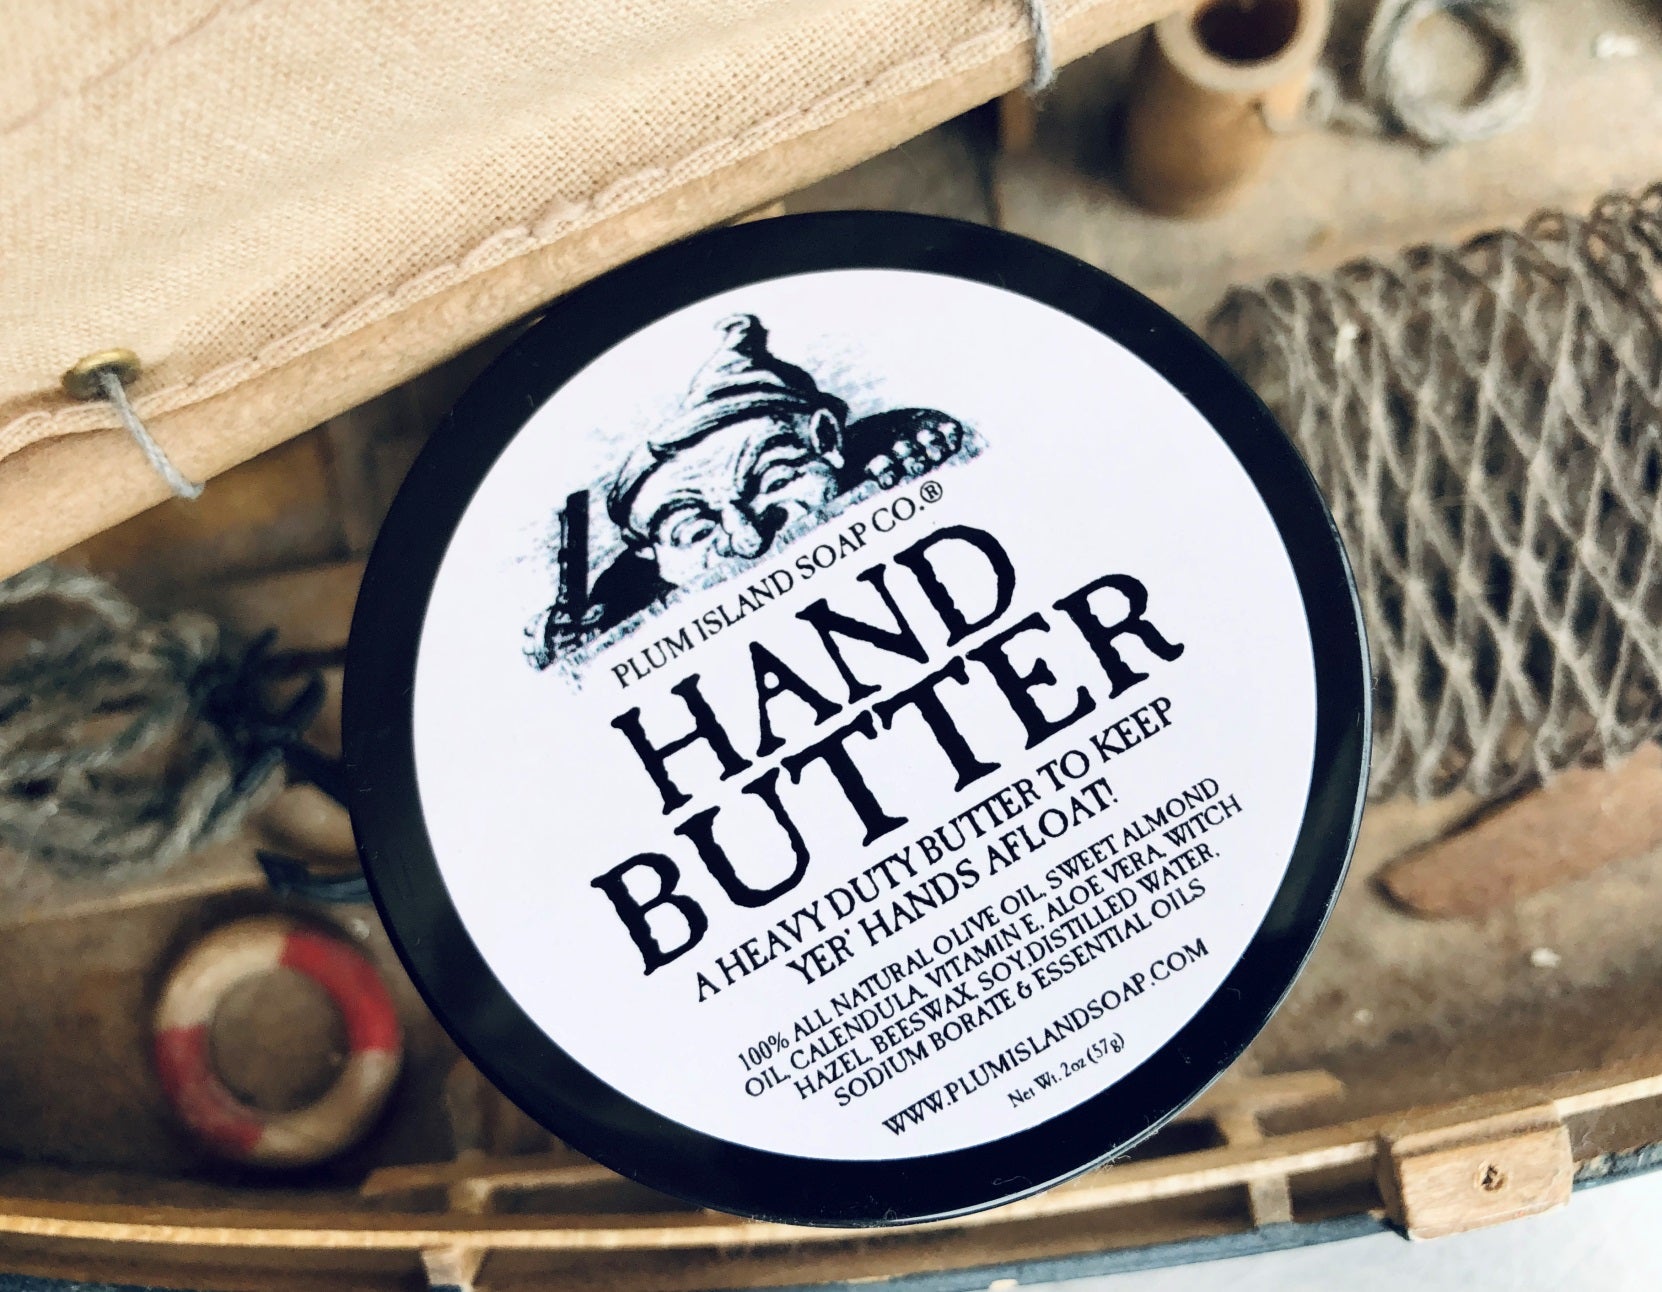 Repairing Hand Butter